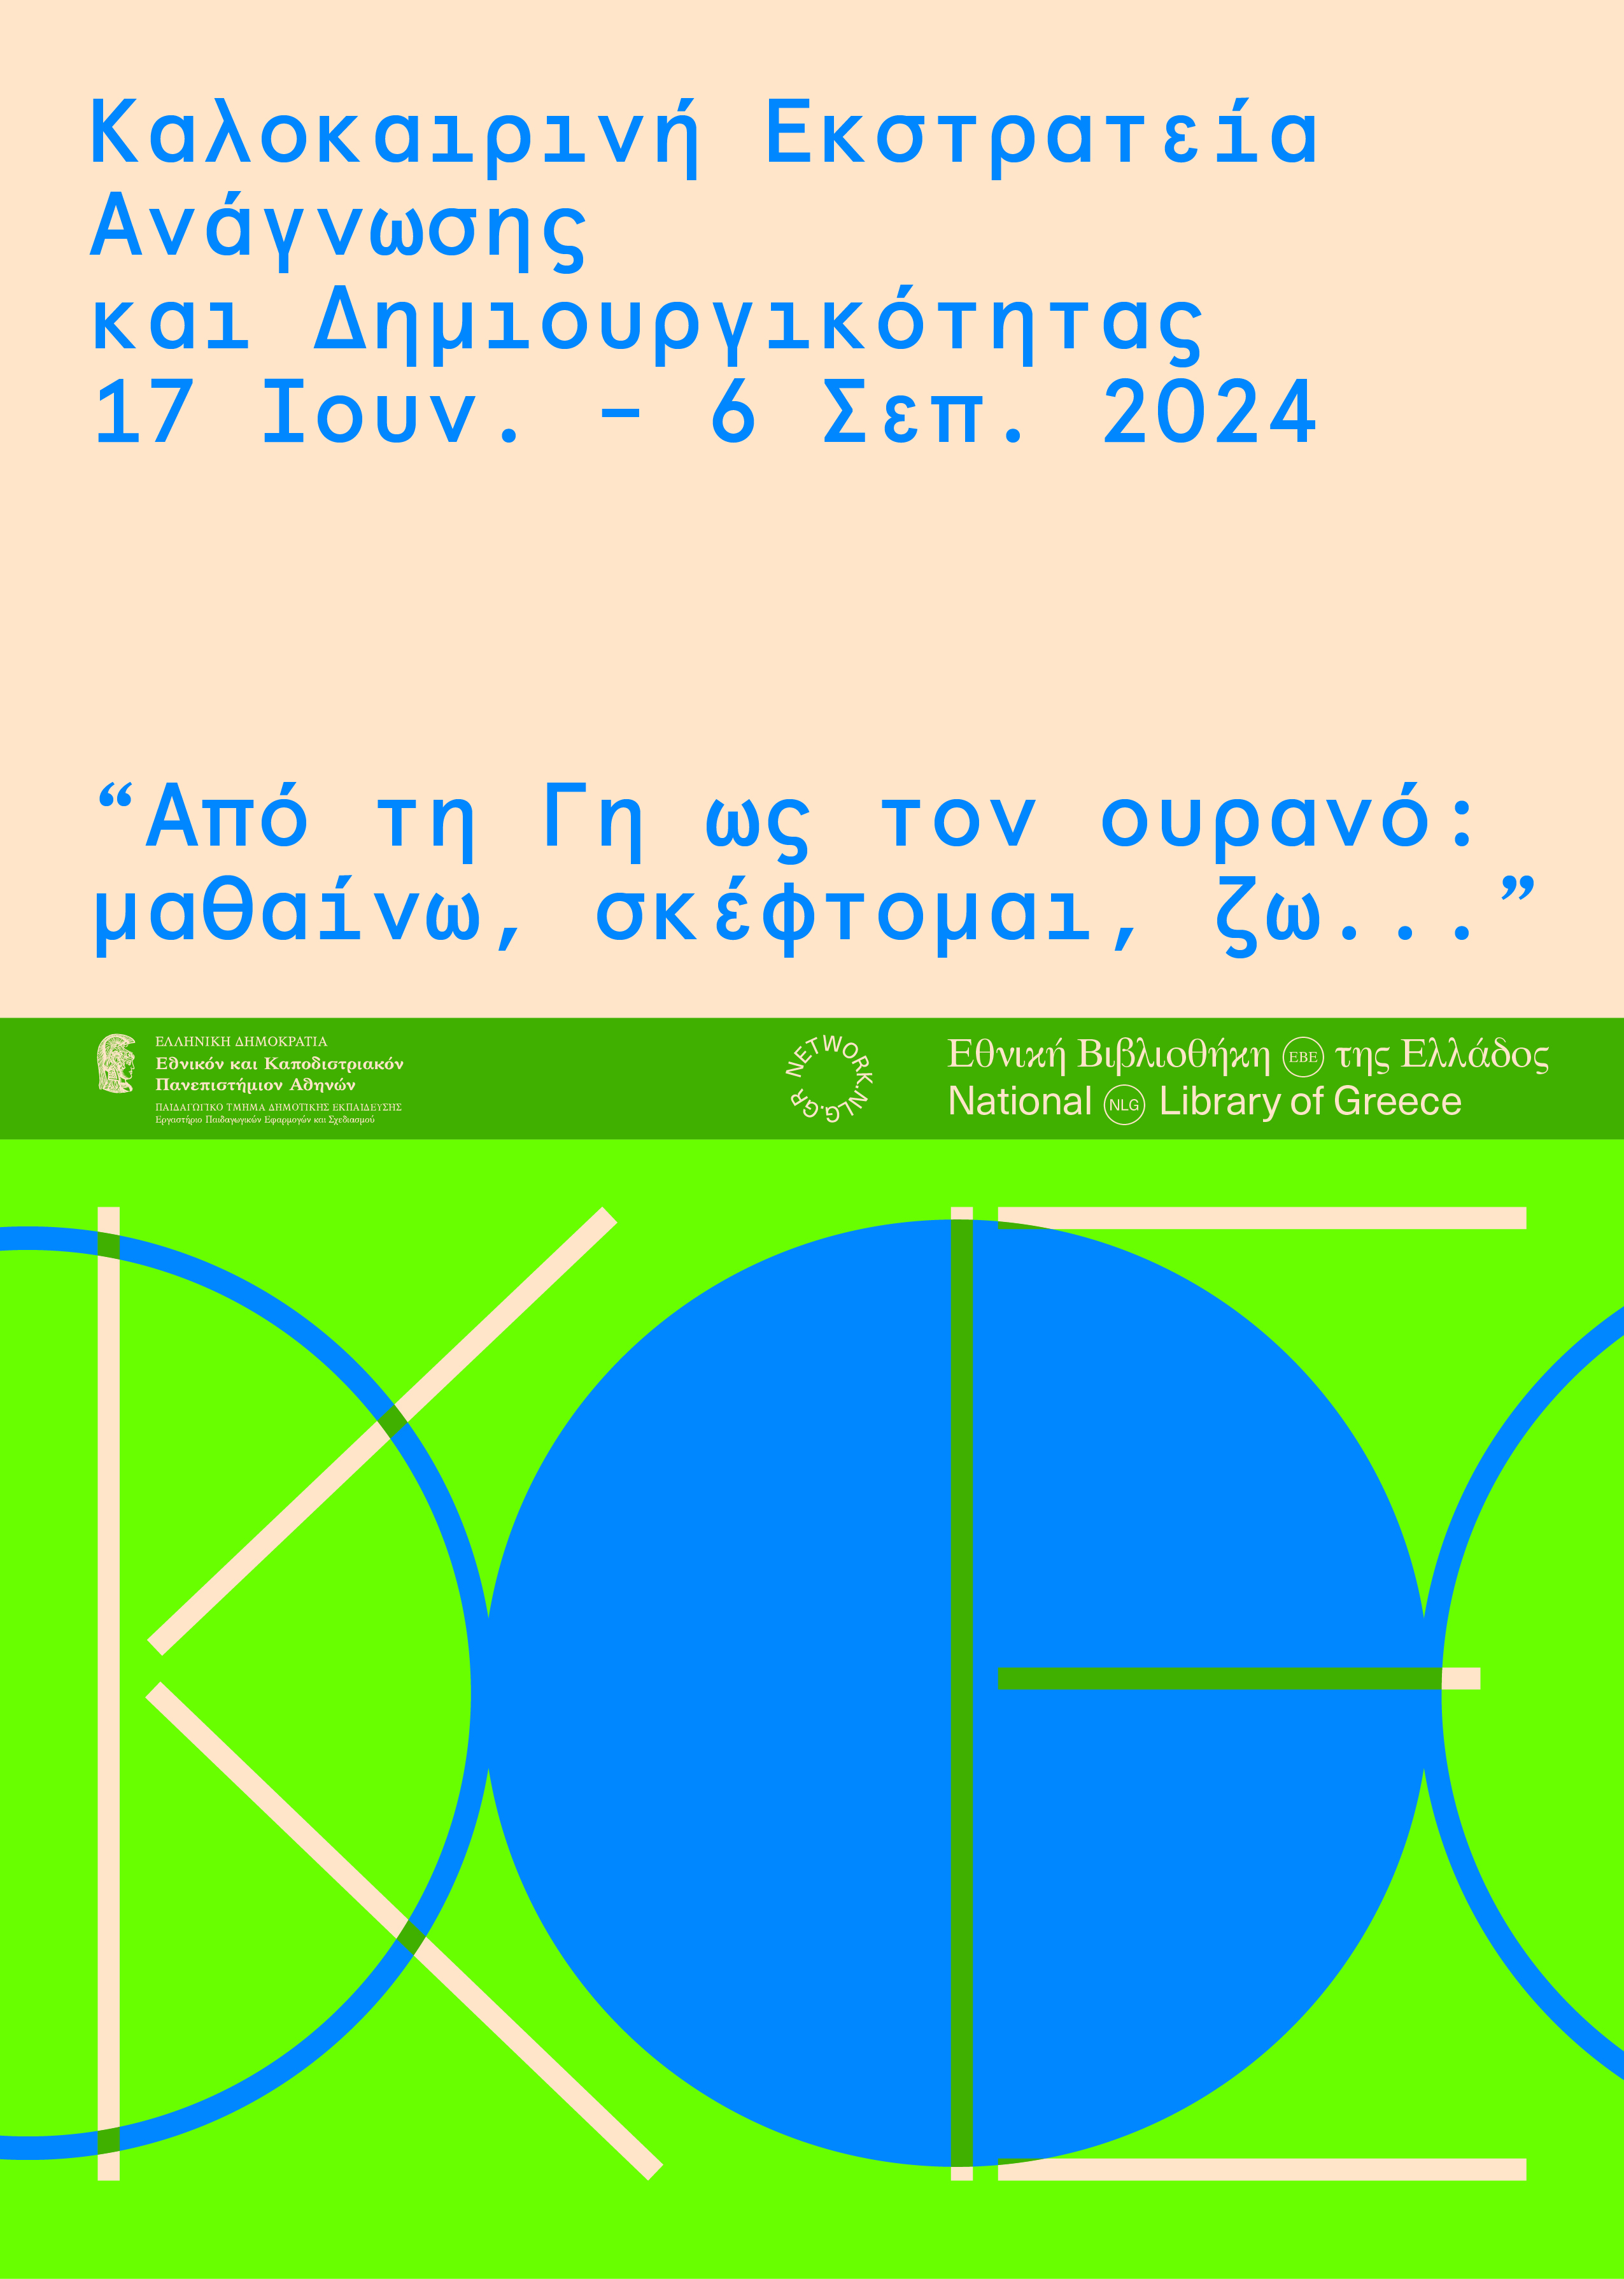 Αφίσα της εκστρατείας ανάγνωσης και δημιουργικότητας 2024